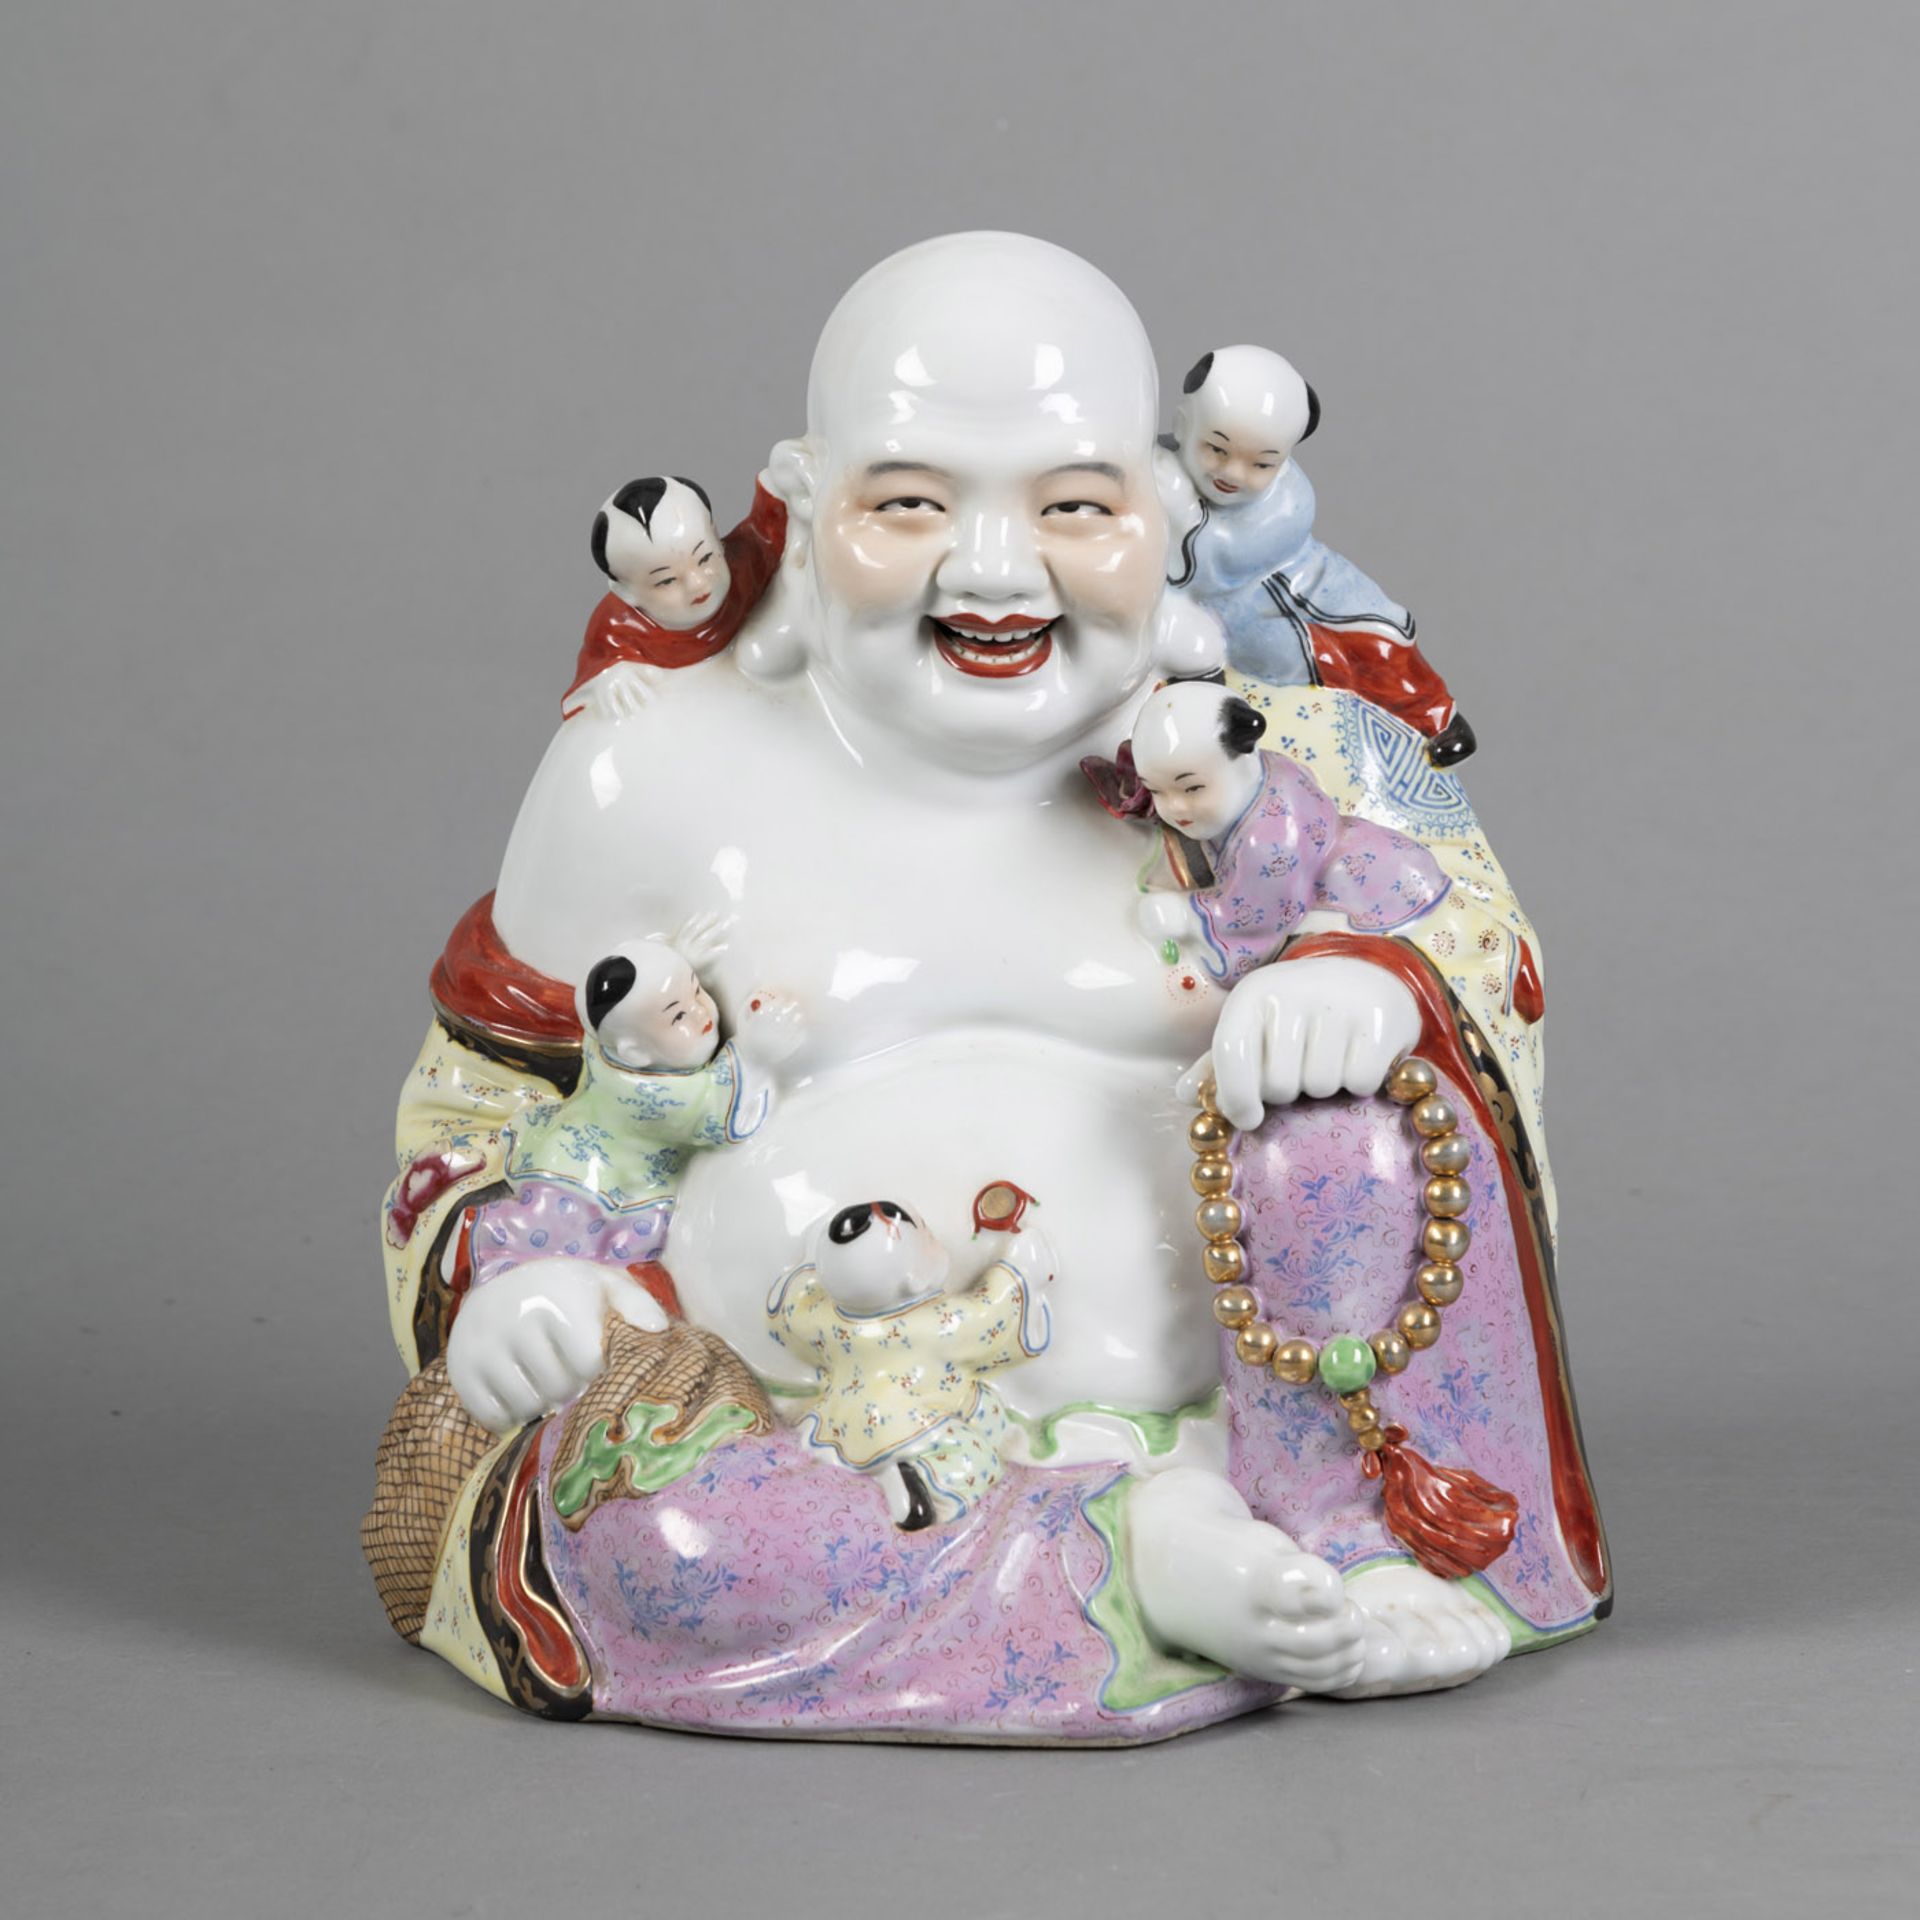 'Famille rose'-Porzellanfigur des Budai mit fünf Knaben